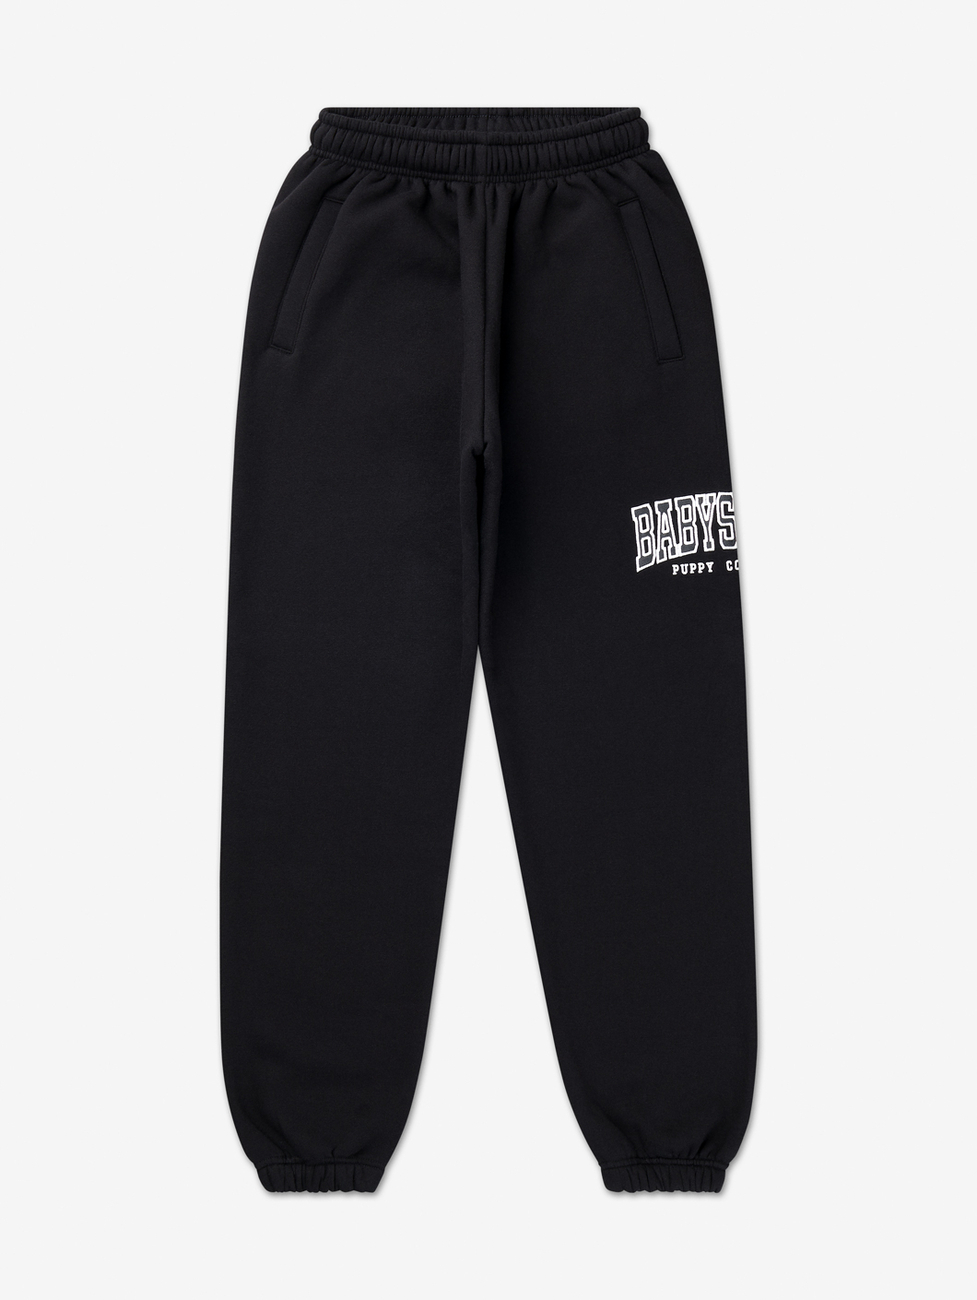 Babystaff College Sweatpants - schwarz XL